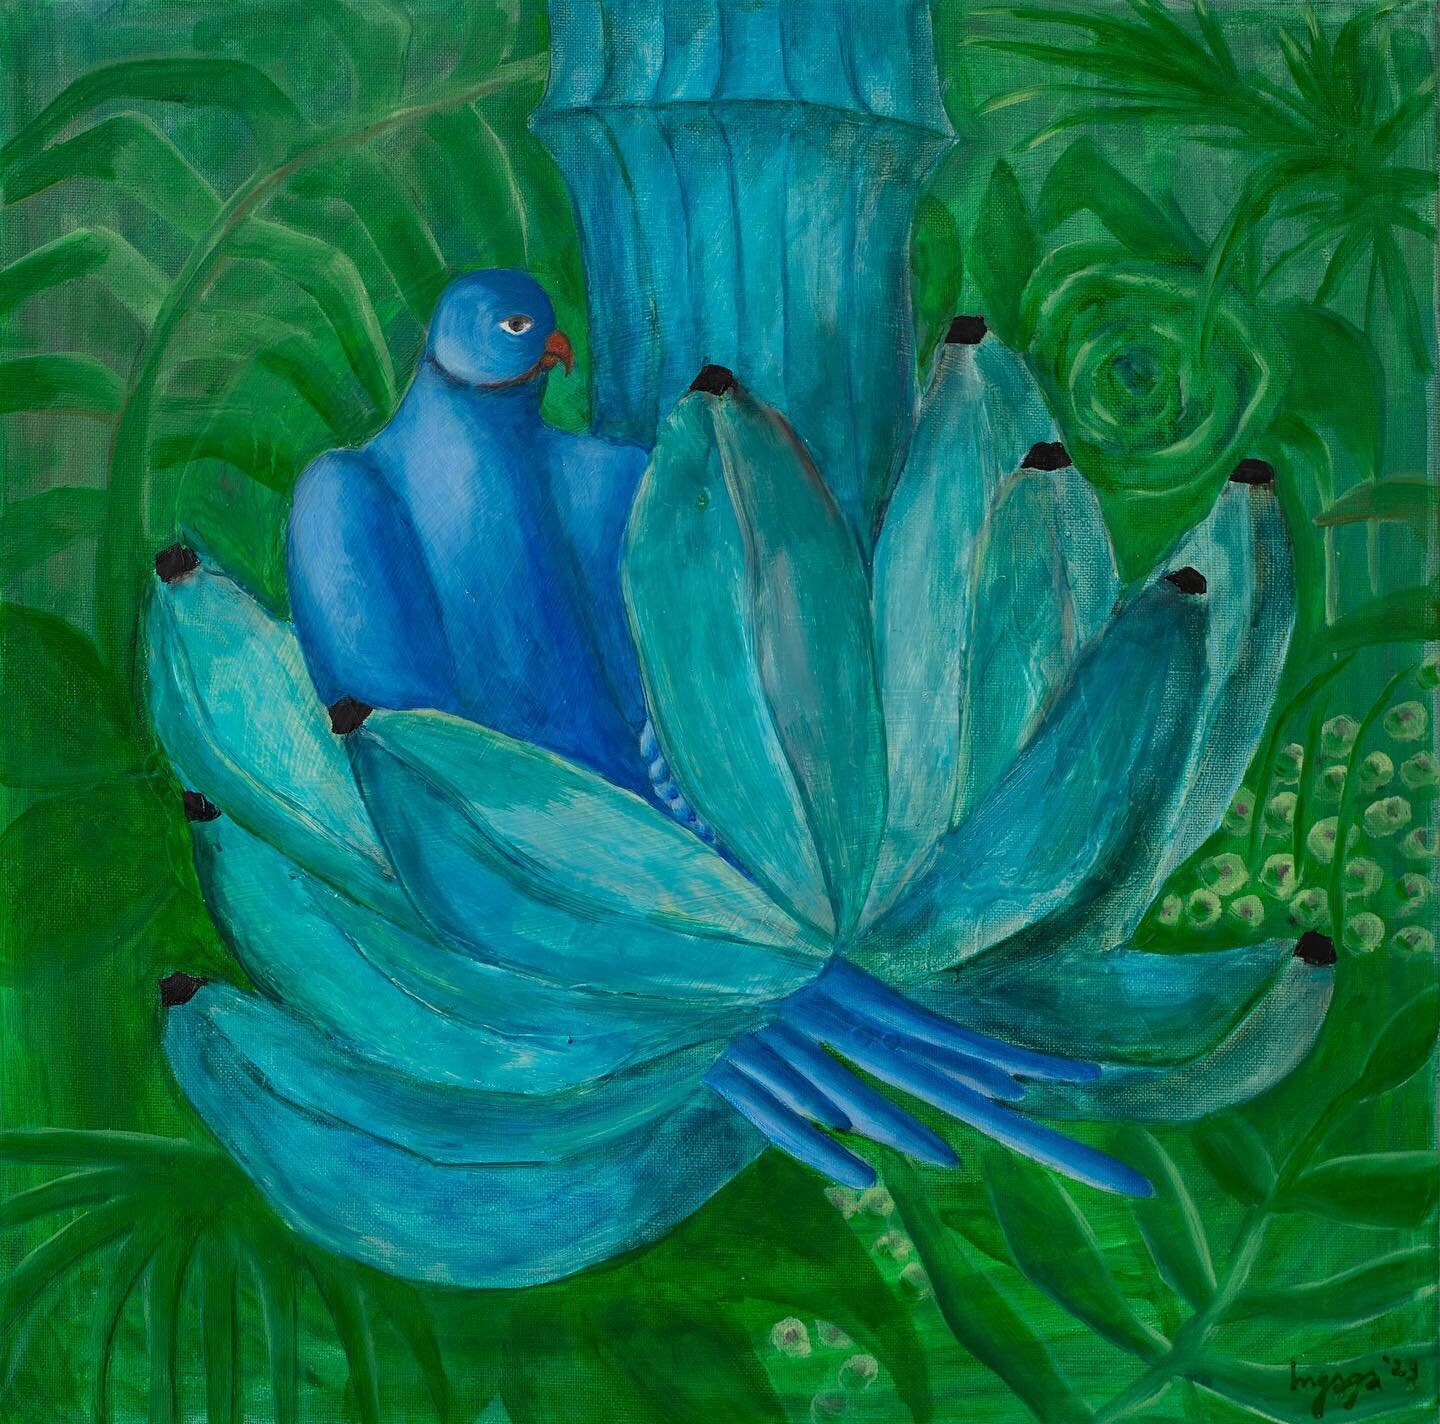 Blue bird and bananas 
oil on recycled canvas
2023 #ingaga #ingakaupelyte